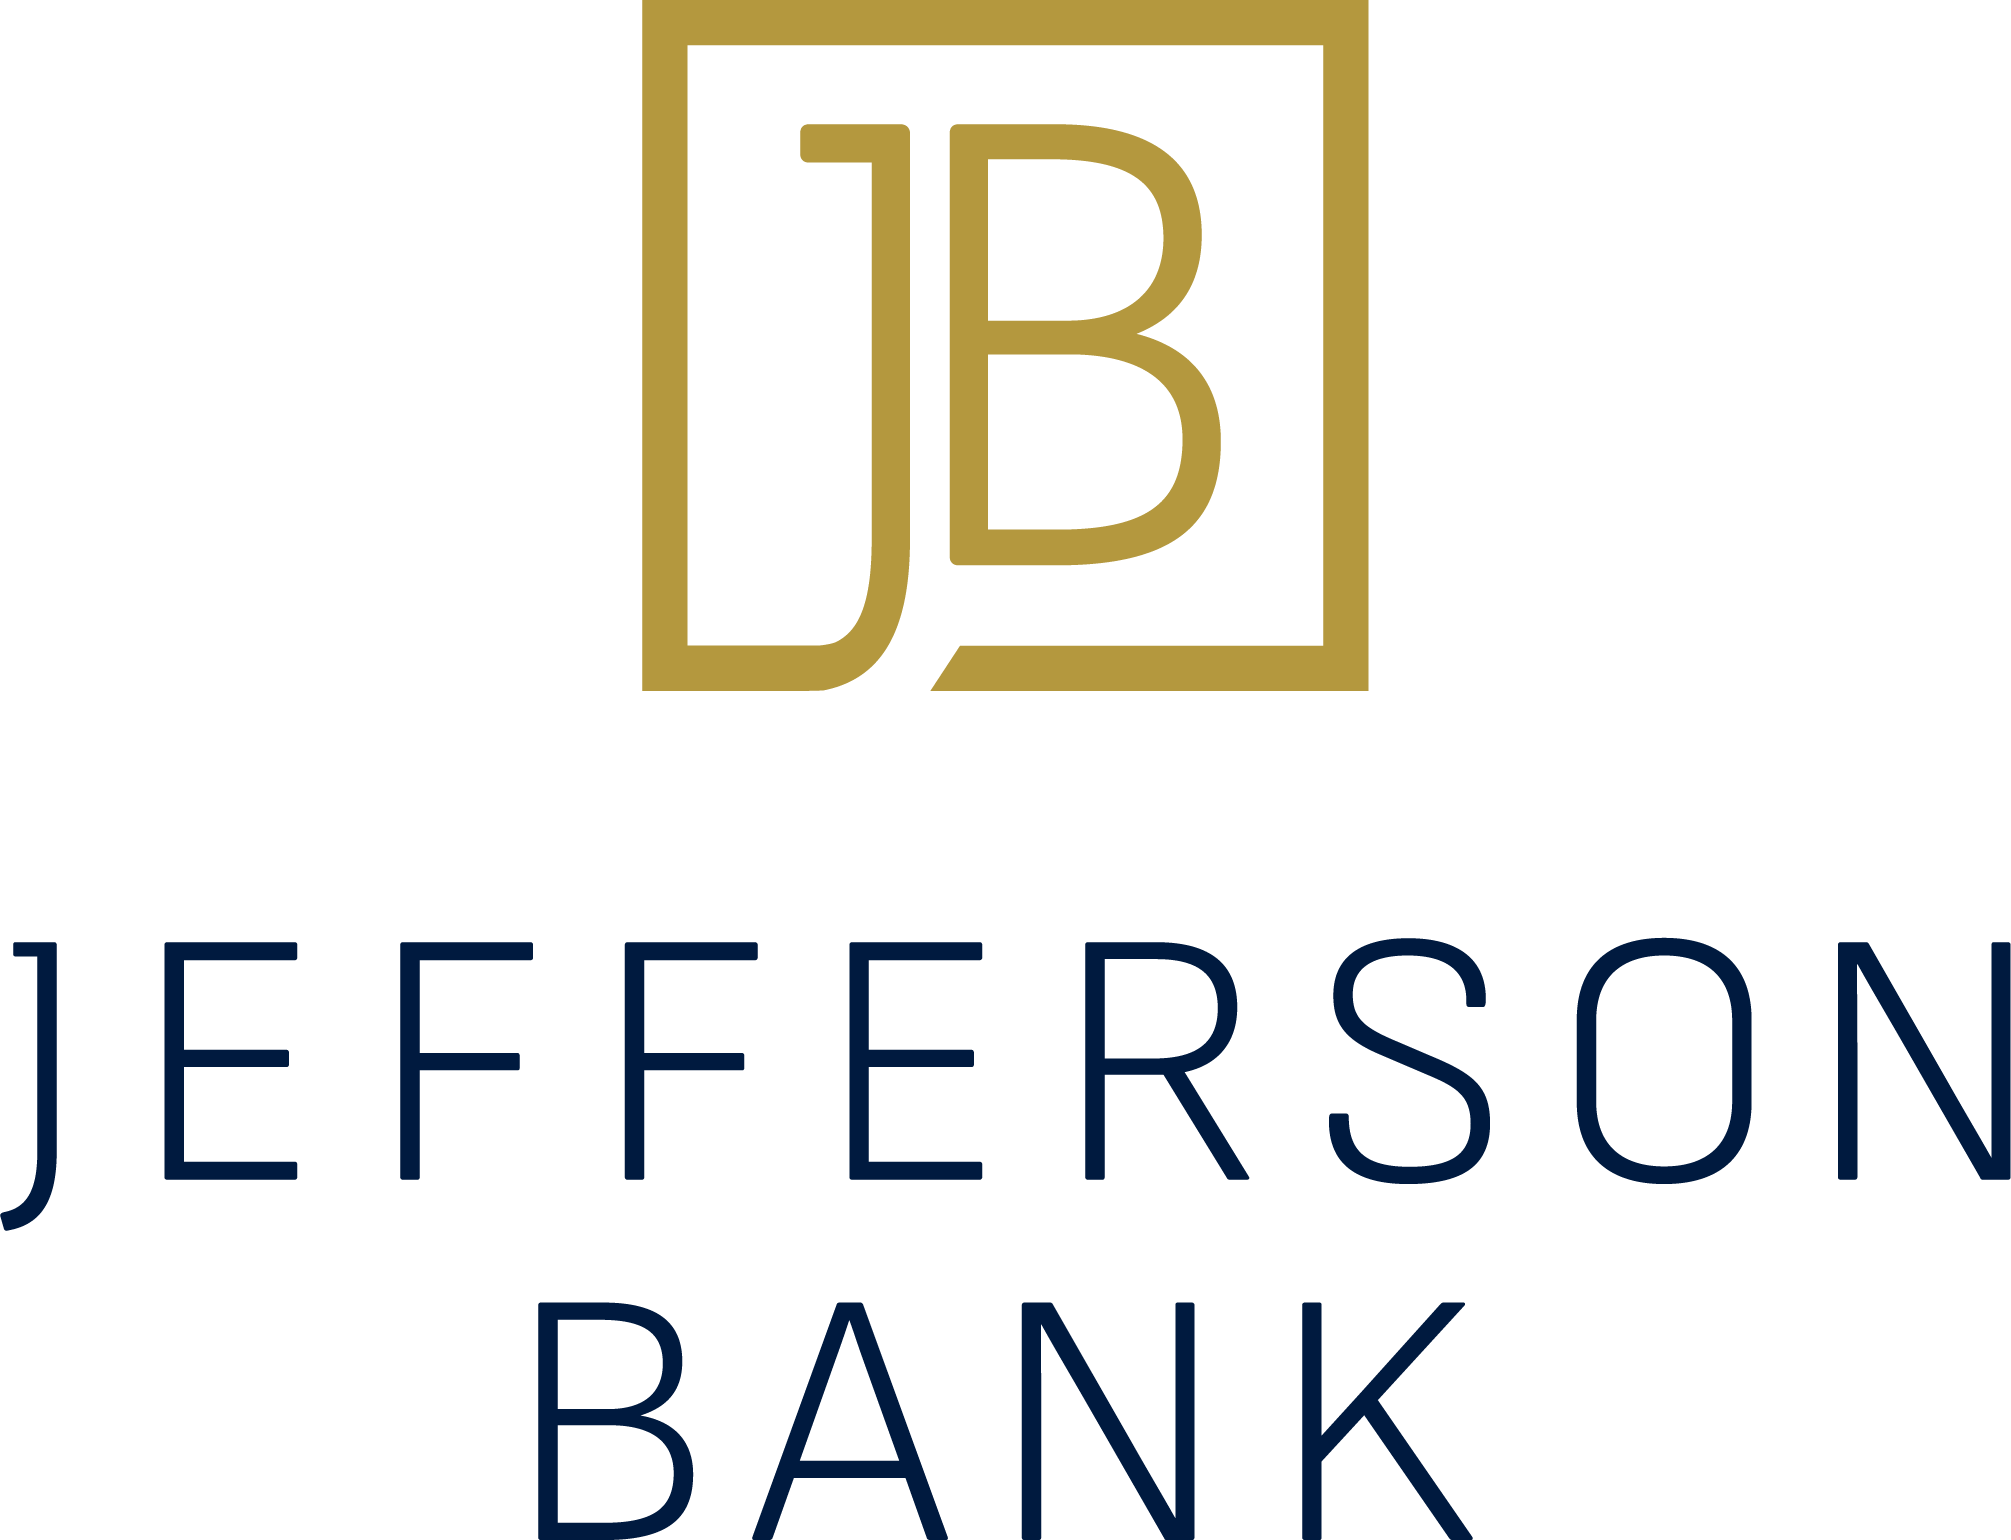 JEFFERSON BANK LOGO